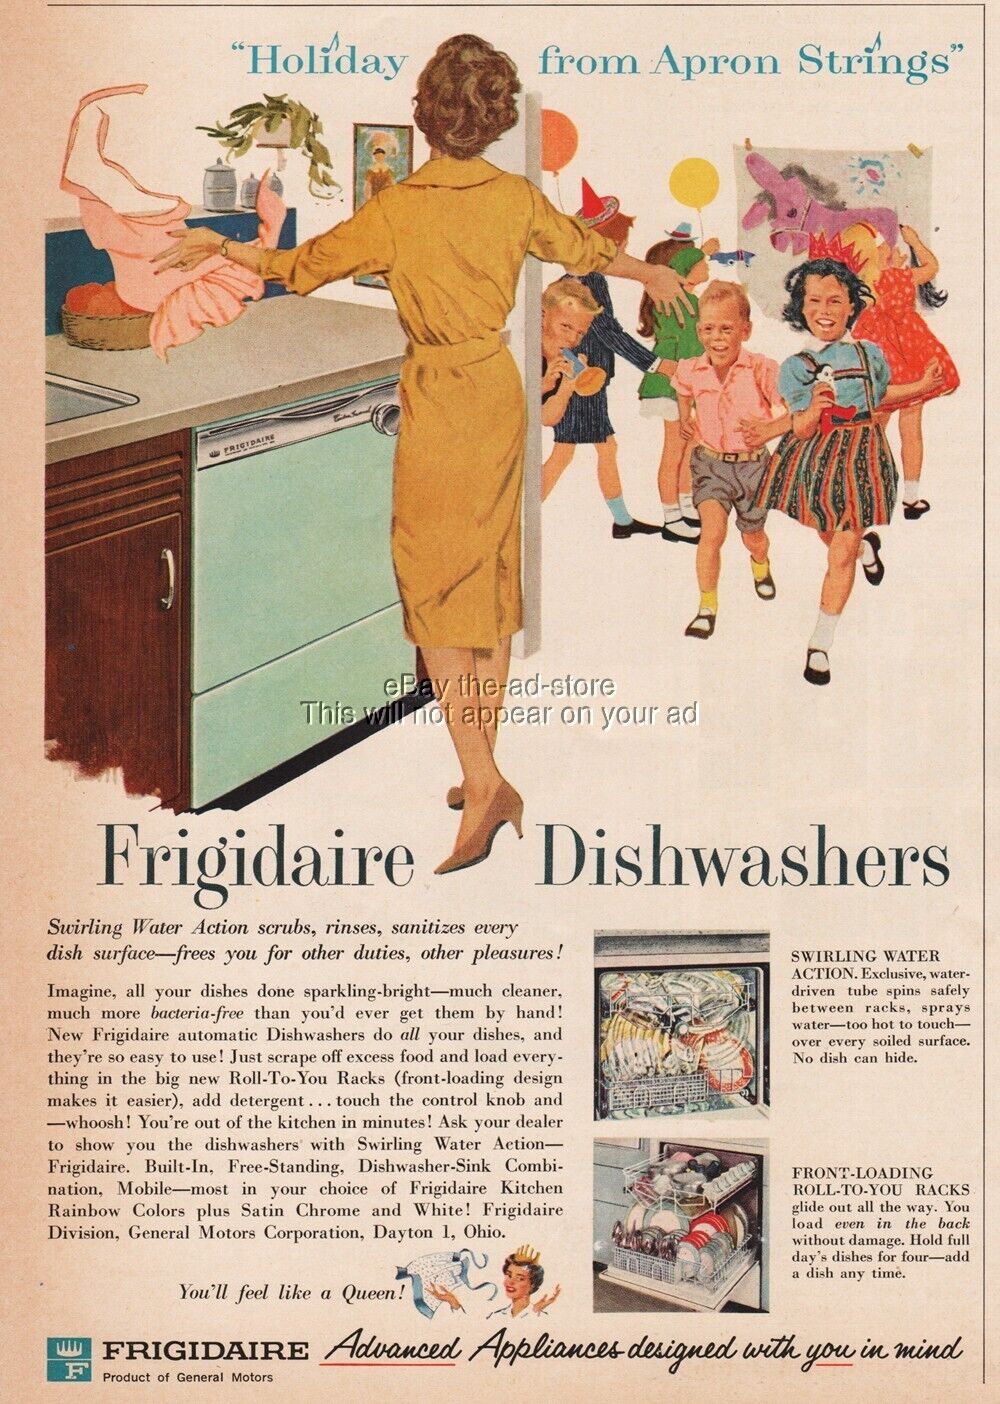 1960 Frigidaire Dishwasher Dayton Ohio Holiday from Apron Strings ad advertising